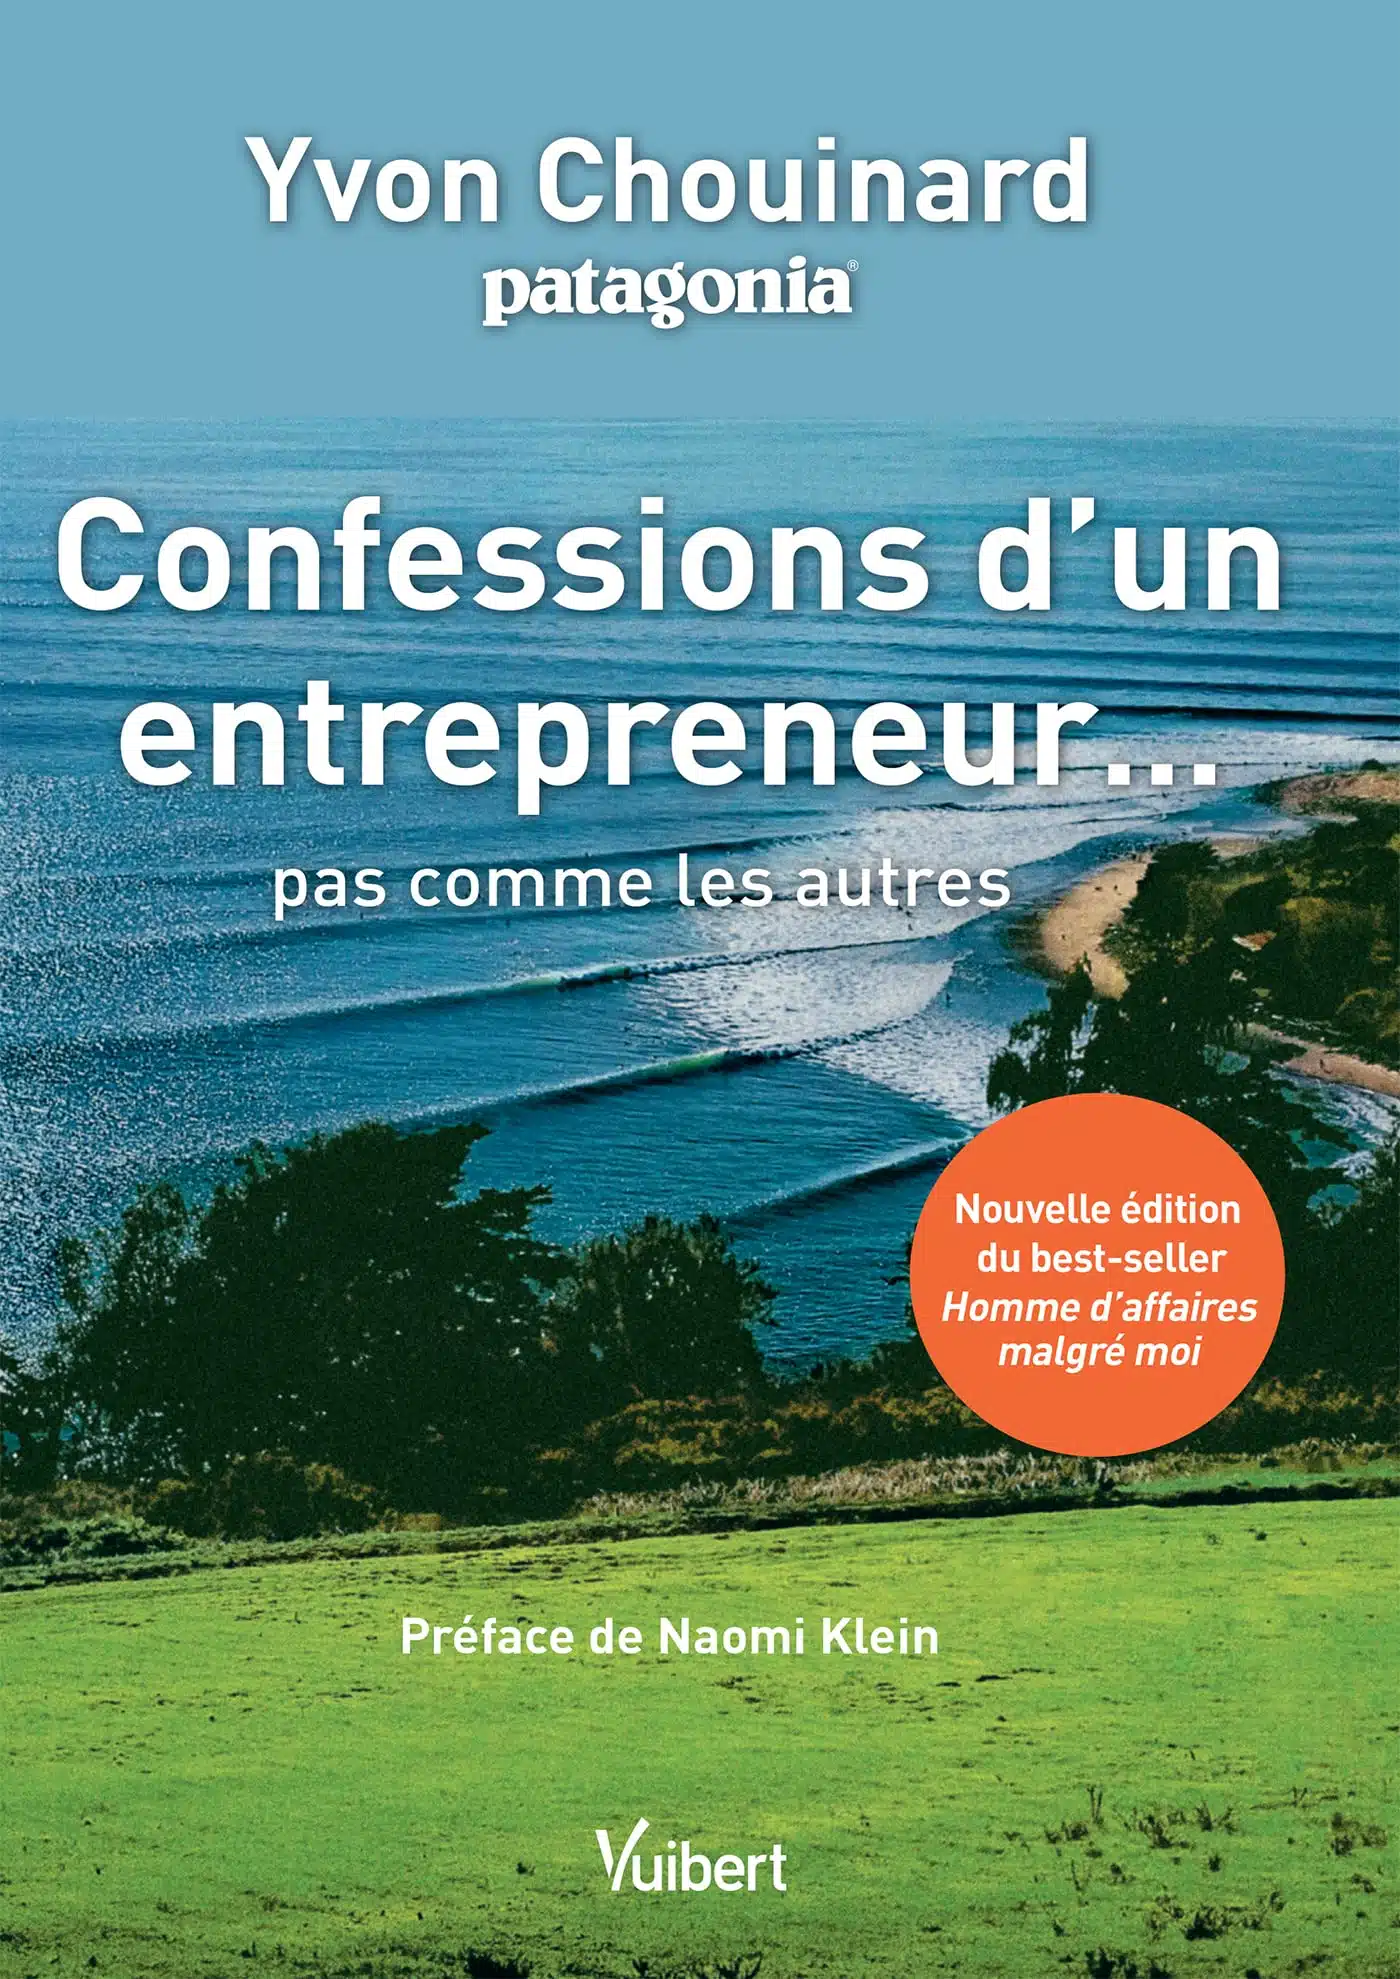 Confessions d’un entrepreneur pas comme les autres, livre d'Yvon Chouinard de Patagonia